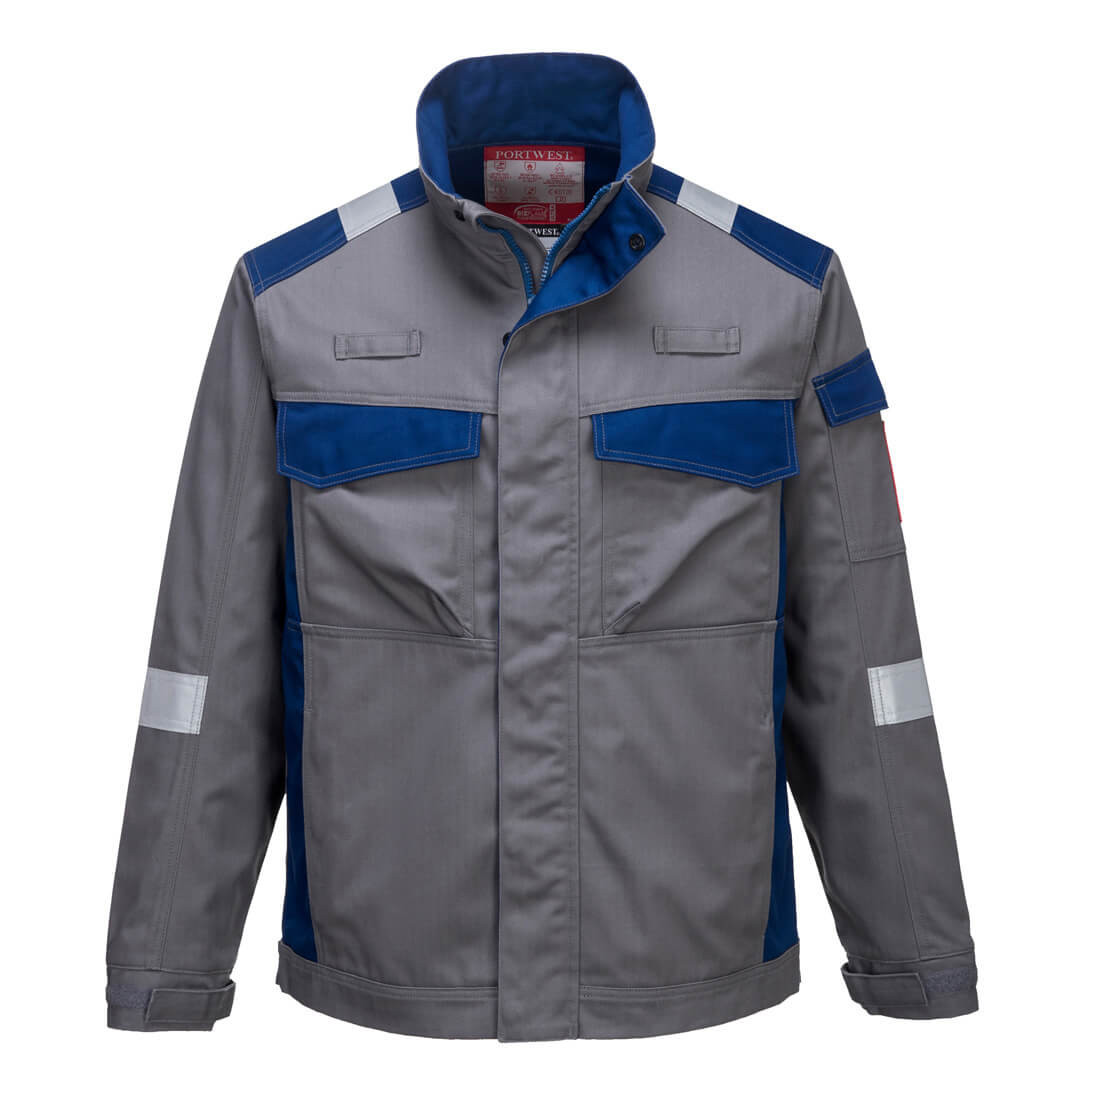 Bizflame Ultra Jacket - Les vêtements de protection